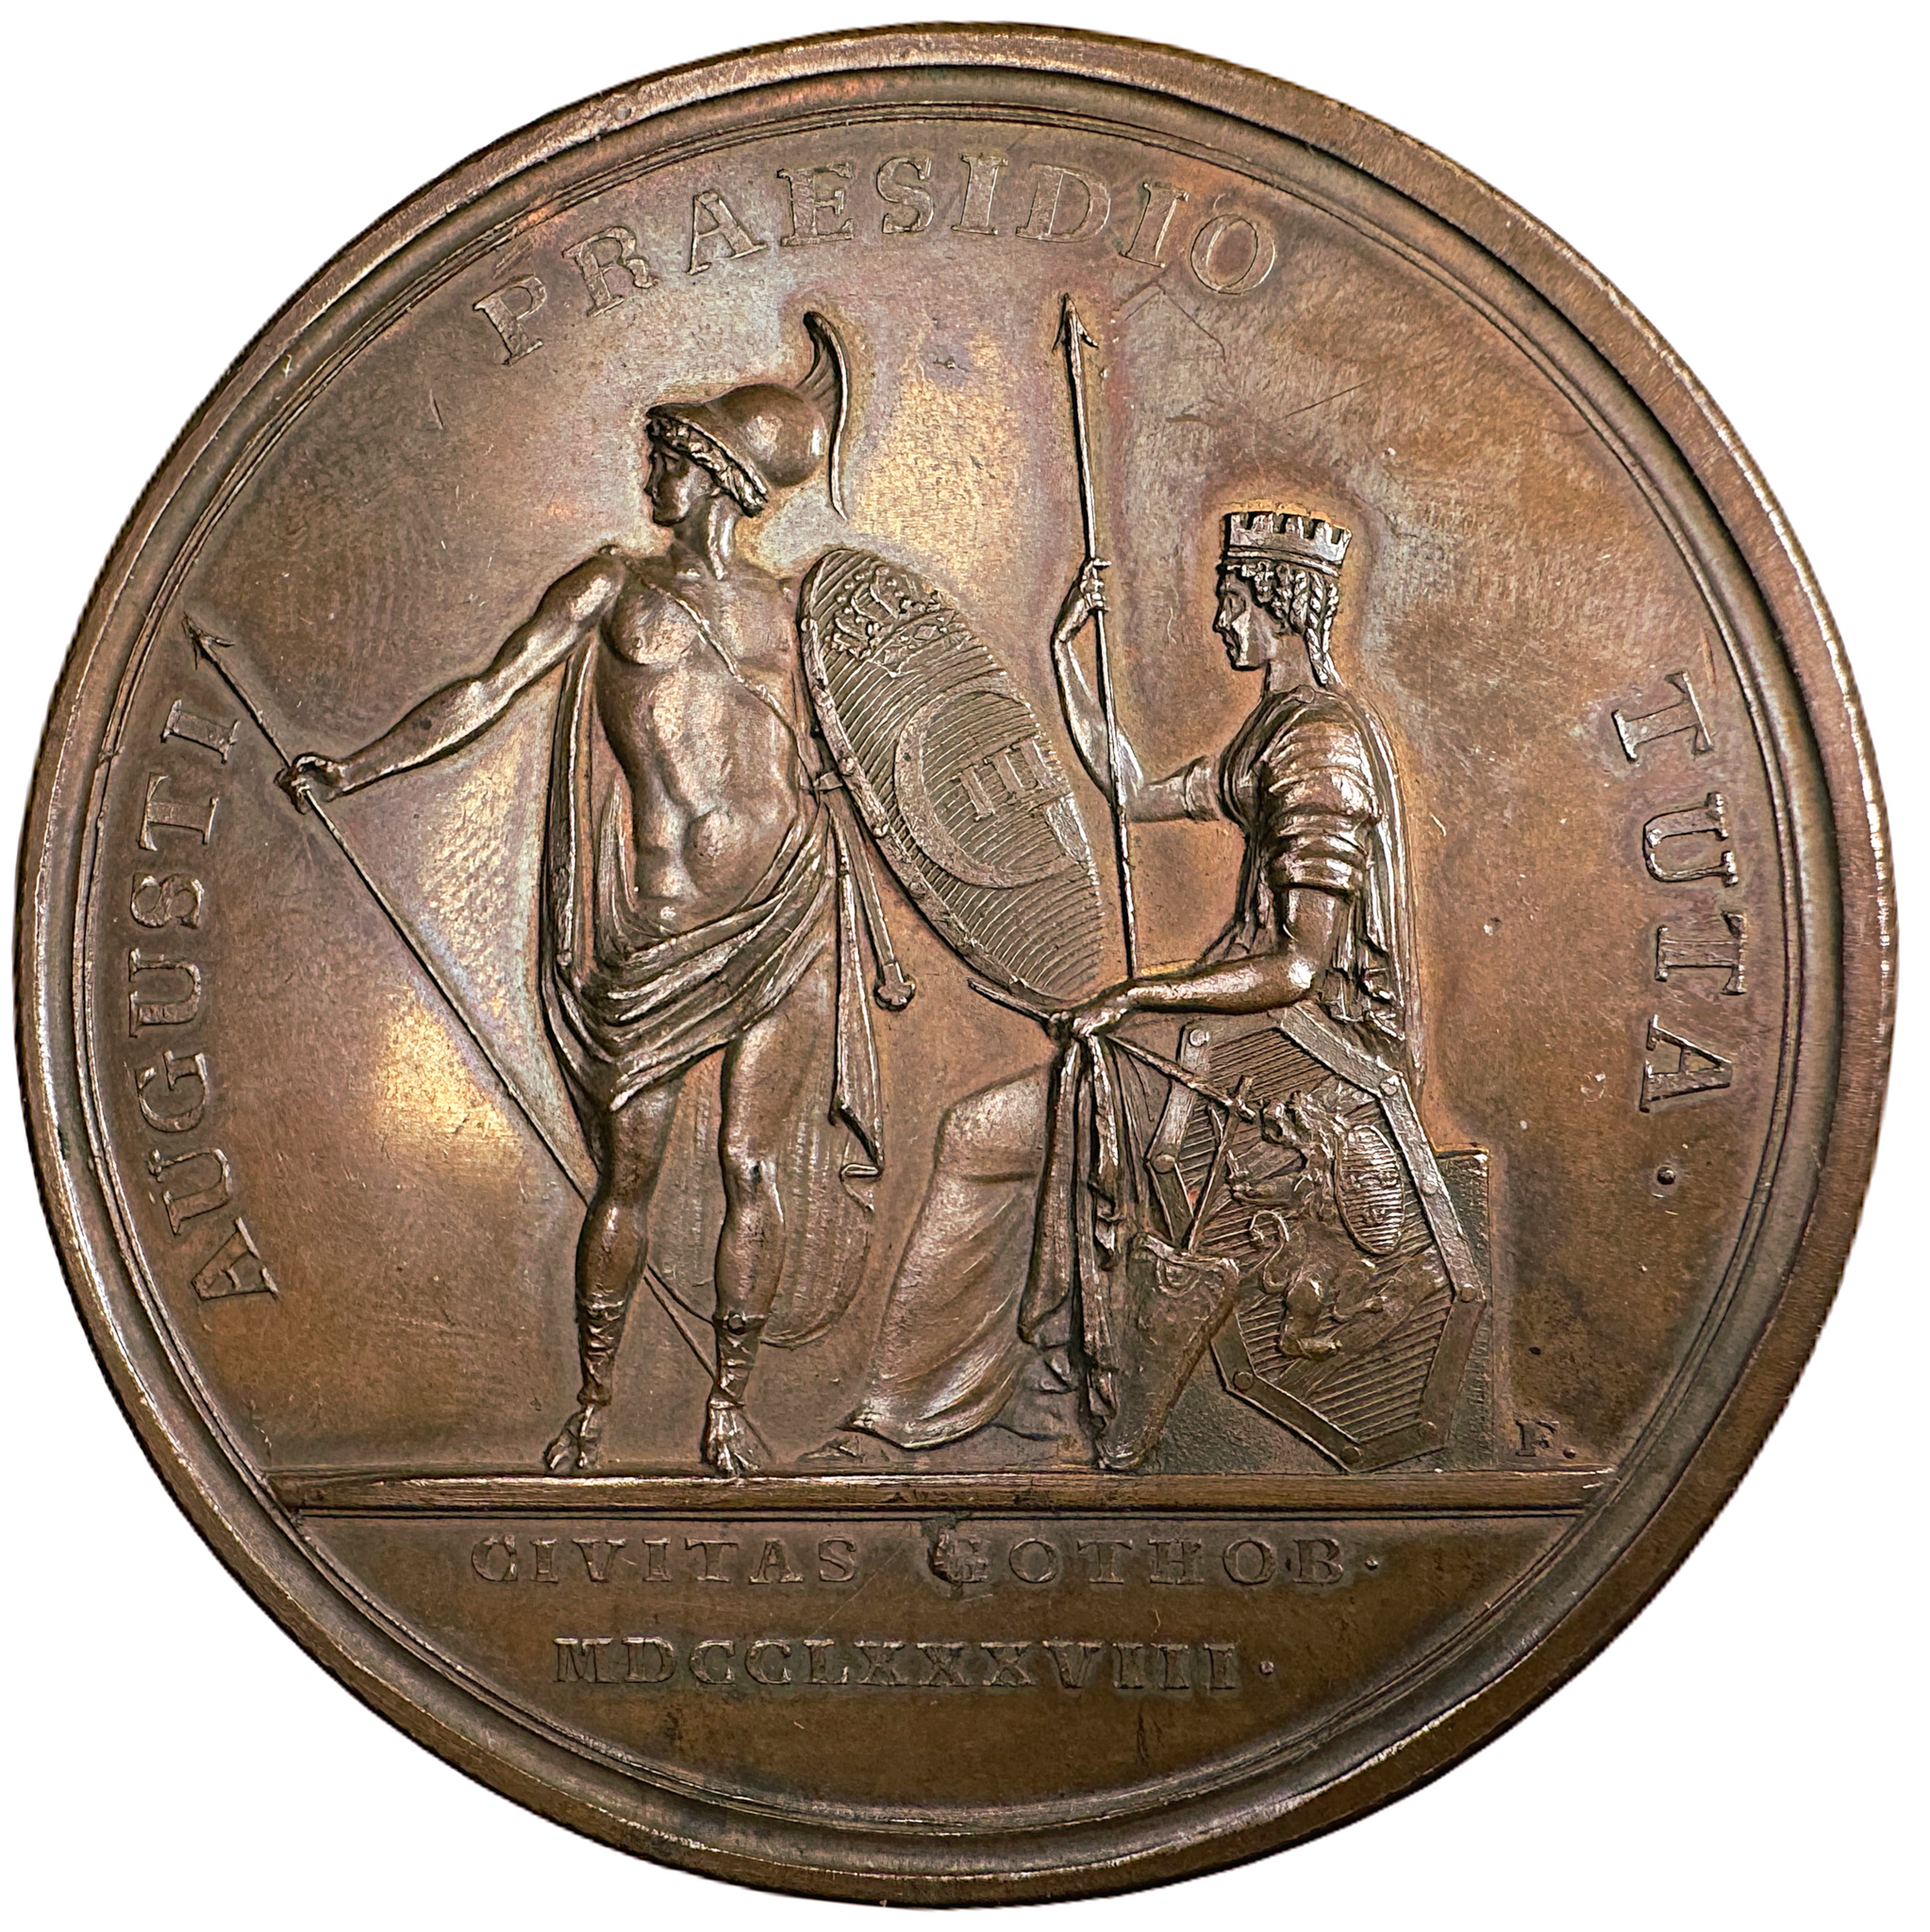 Konungen räddar Göteborg från den danska krigshärens anfall i oktober 1788 av Carl Gustaf Fehrman - Mycket sällsynt